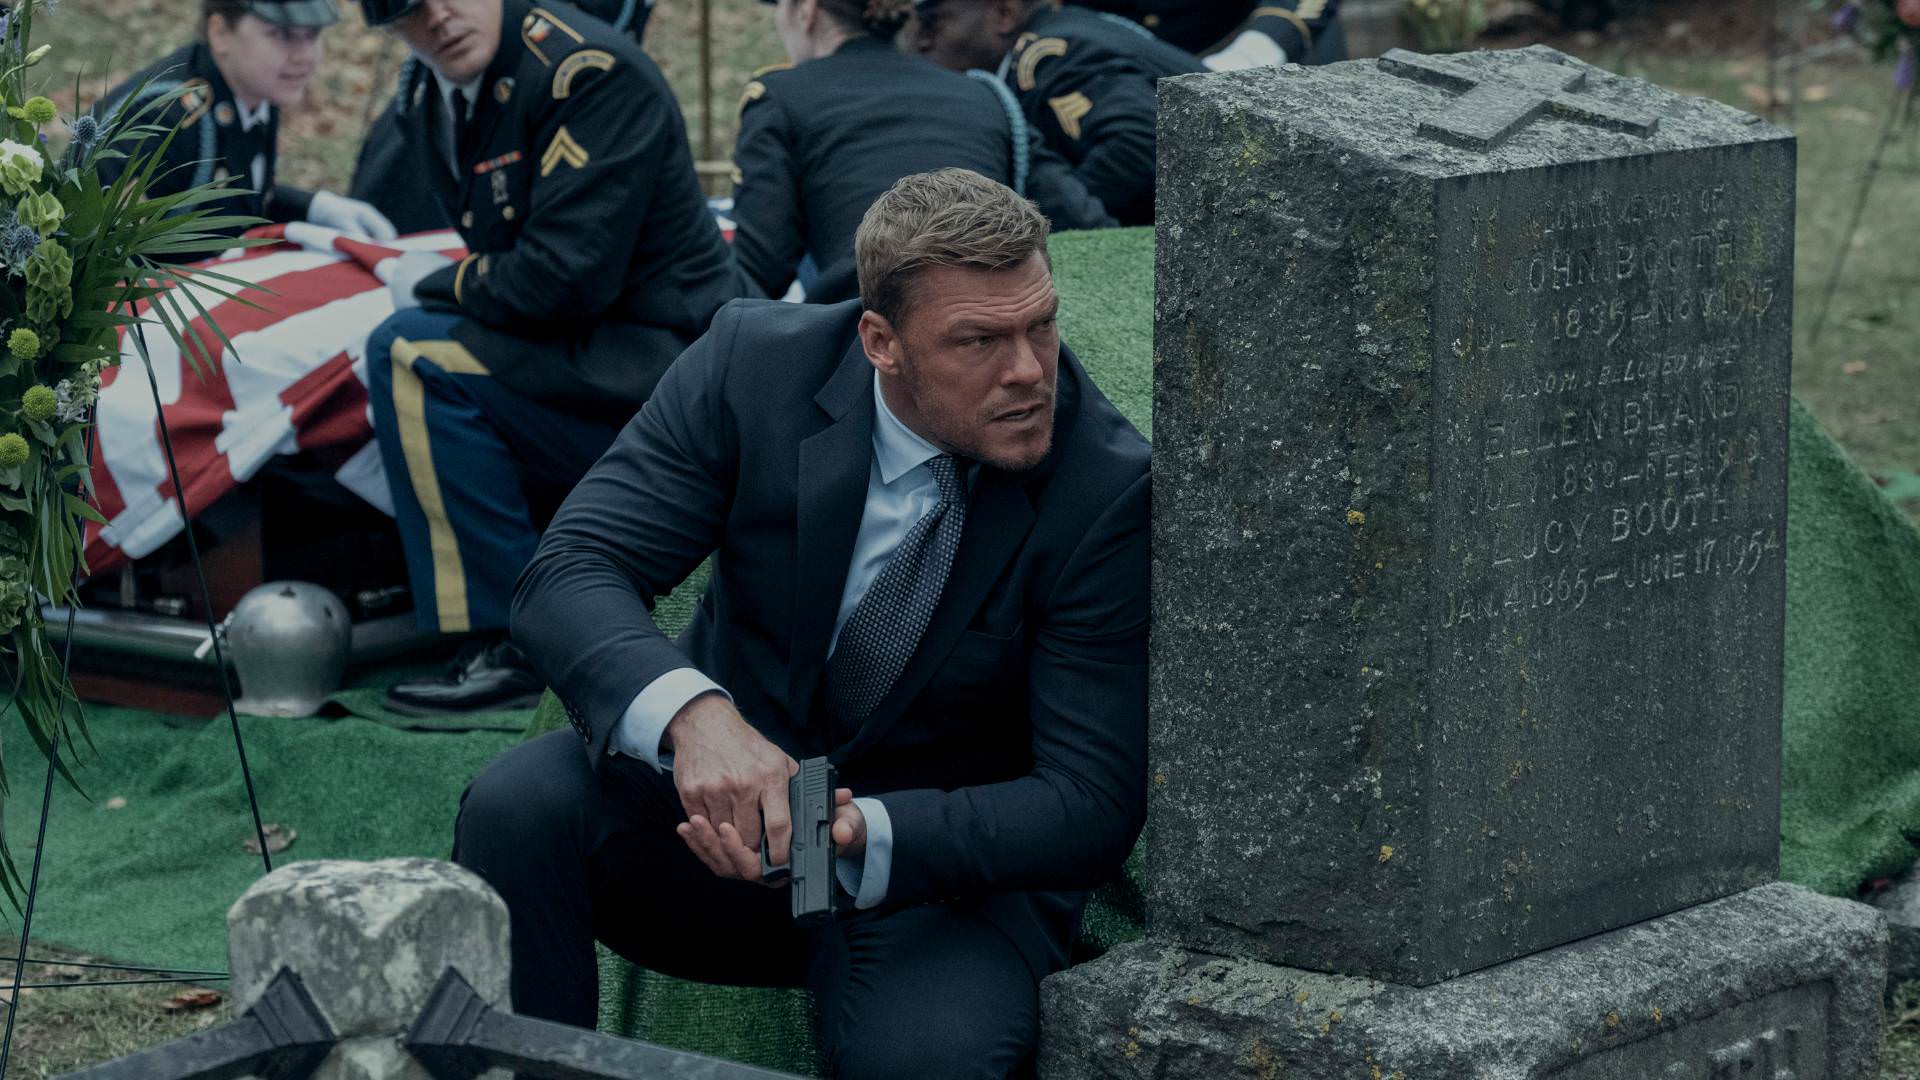 جک ریچر در فصل دوم سریال ریچر پشت سنگ قبری در قبرستان پنهان می شود